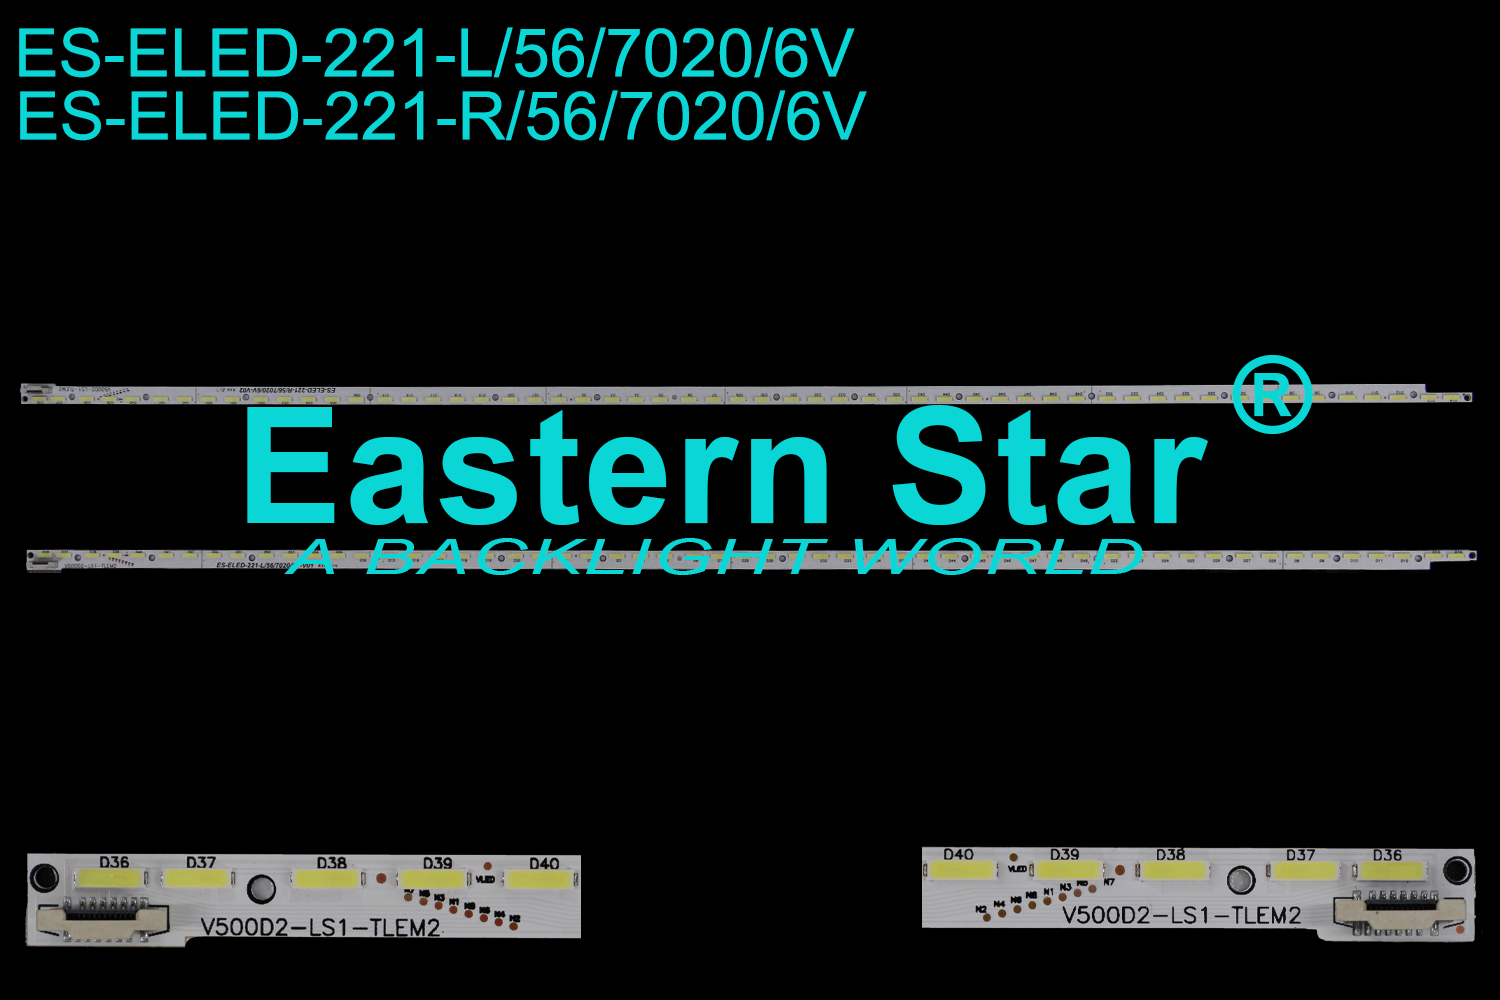 ES-ELED-221 ELED/EDGE TV backlight use for Sony 50'' 56LEDs V500D2-LS1-TREM3 LED STRIPS(2)